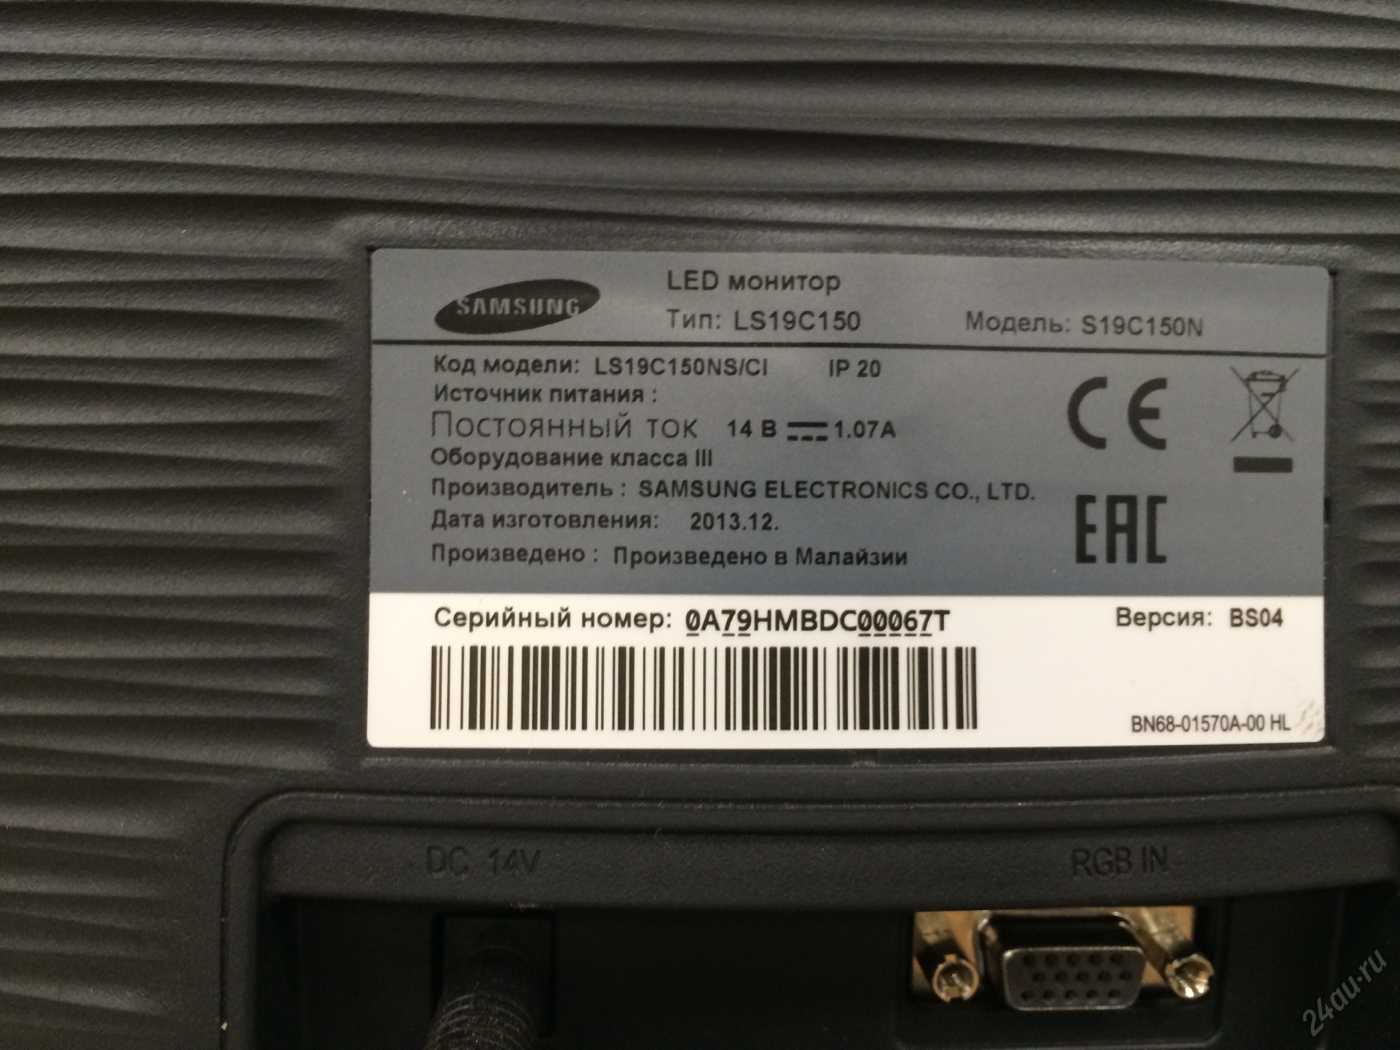 Жк монитор 18.5" samsung s19b150n — купить, цена и характеристики, отзывы